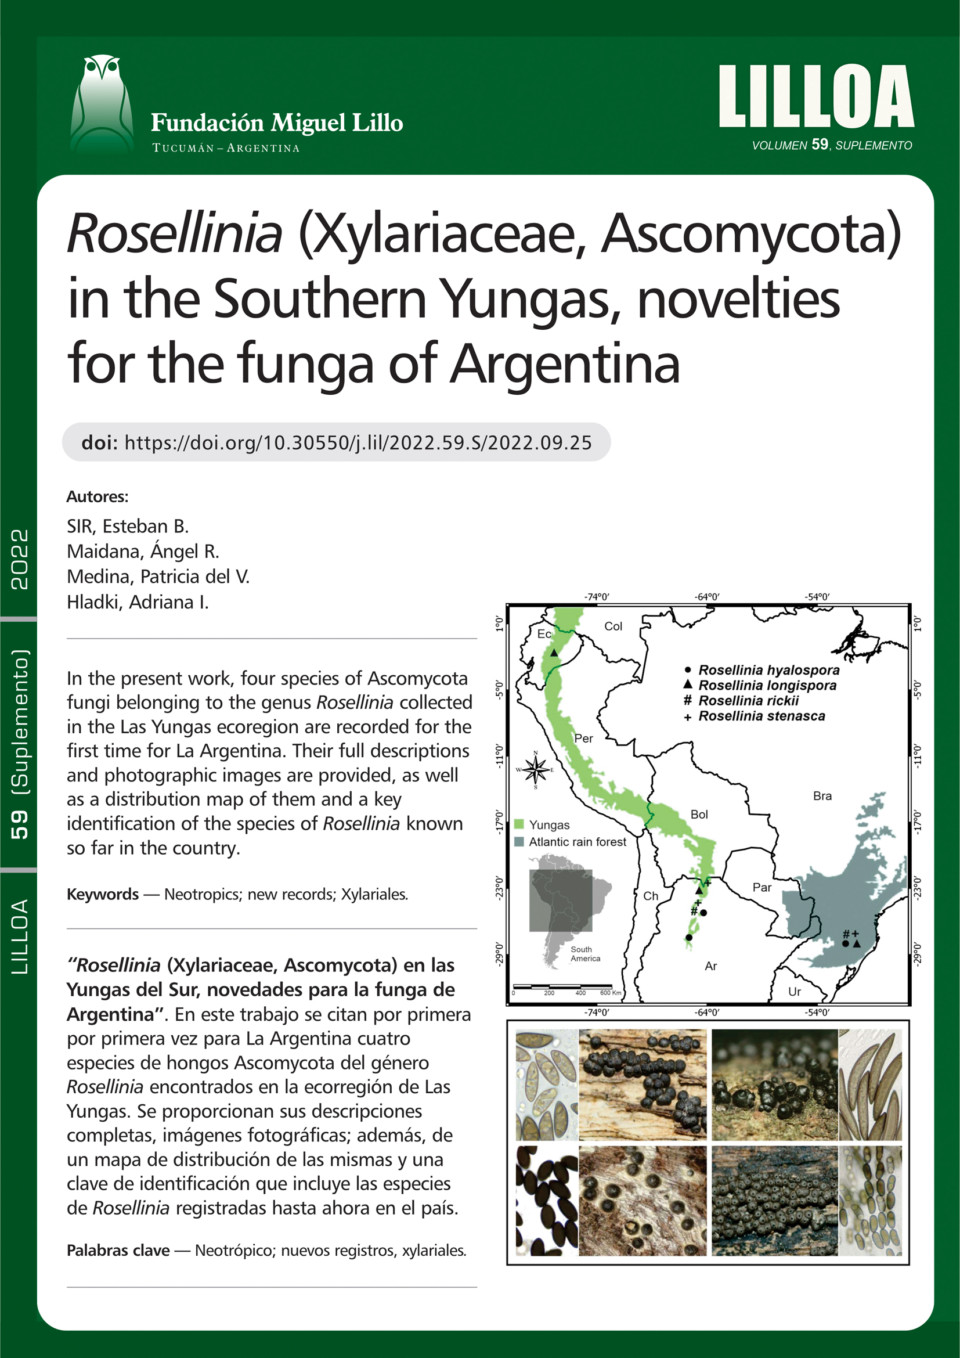 Rosellinia (Xylariaceae, Ascomycota) en las Yungas del Sur, novedades para la funga de Argentina 